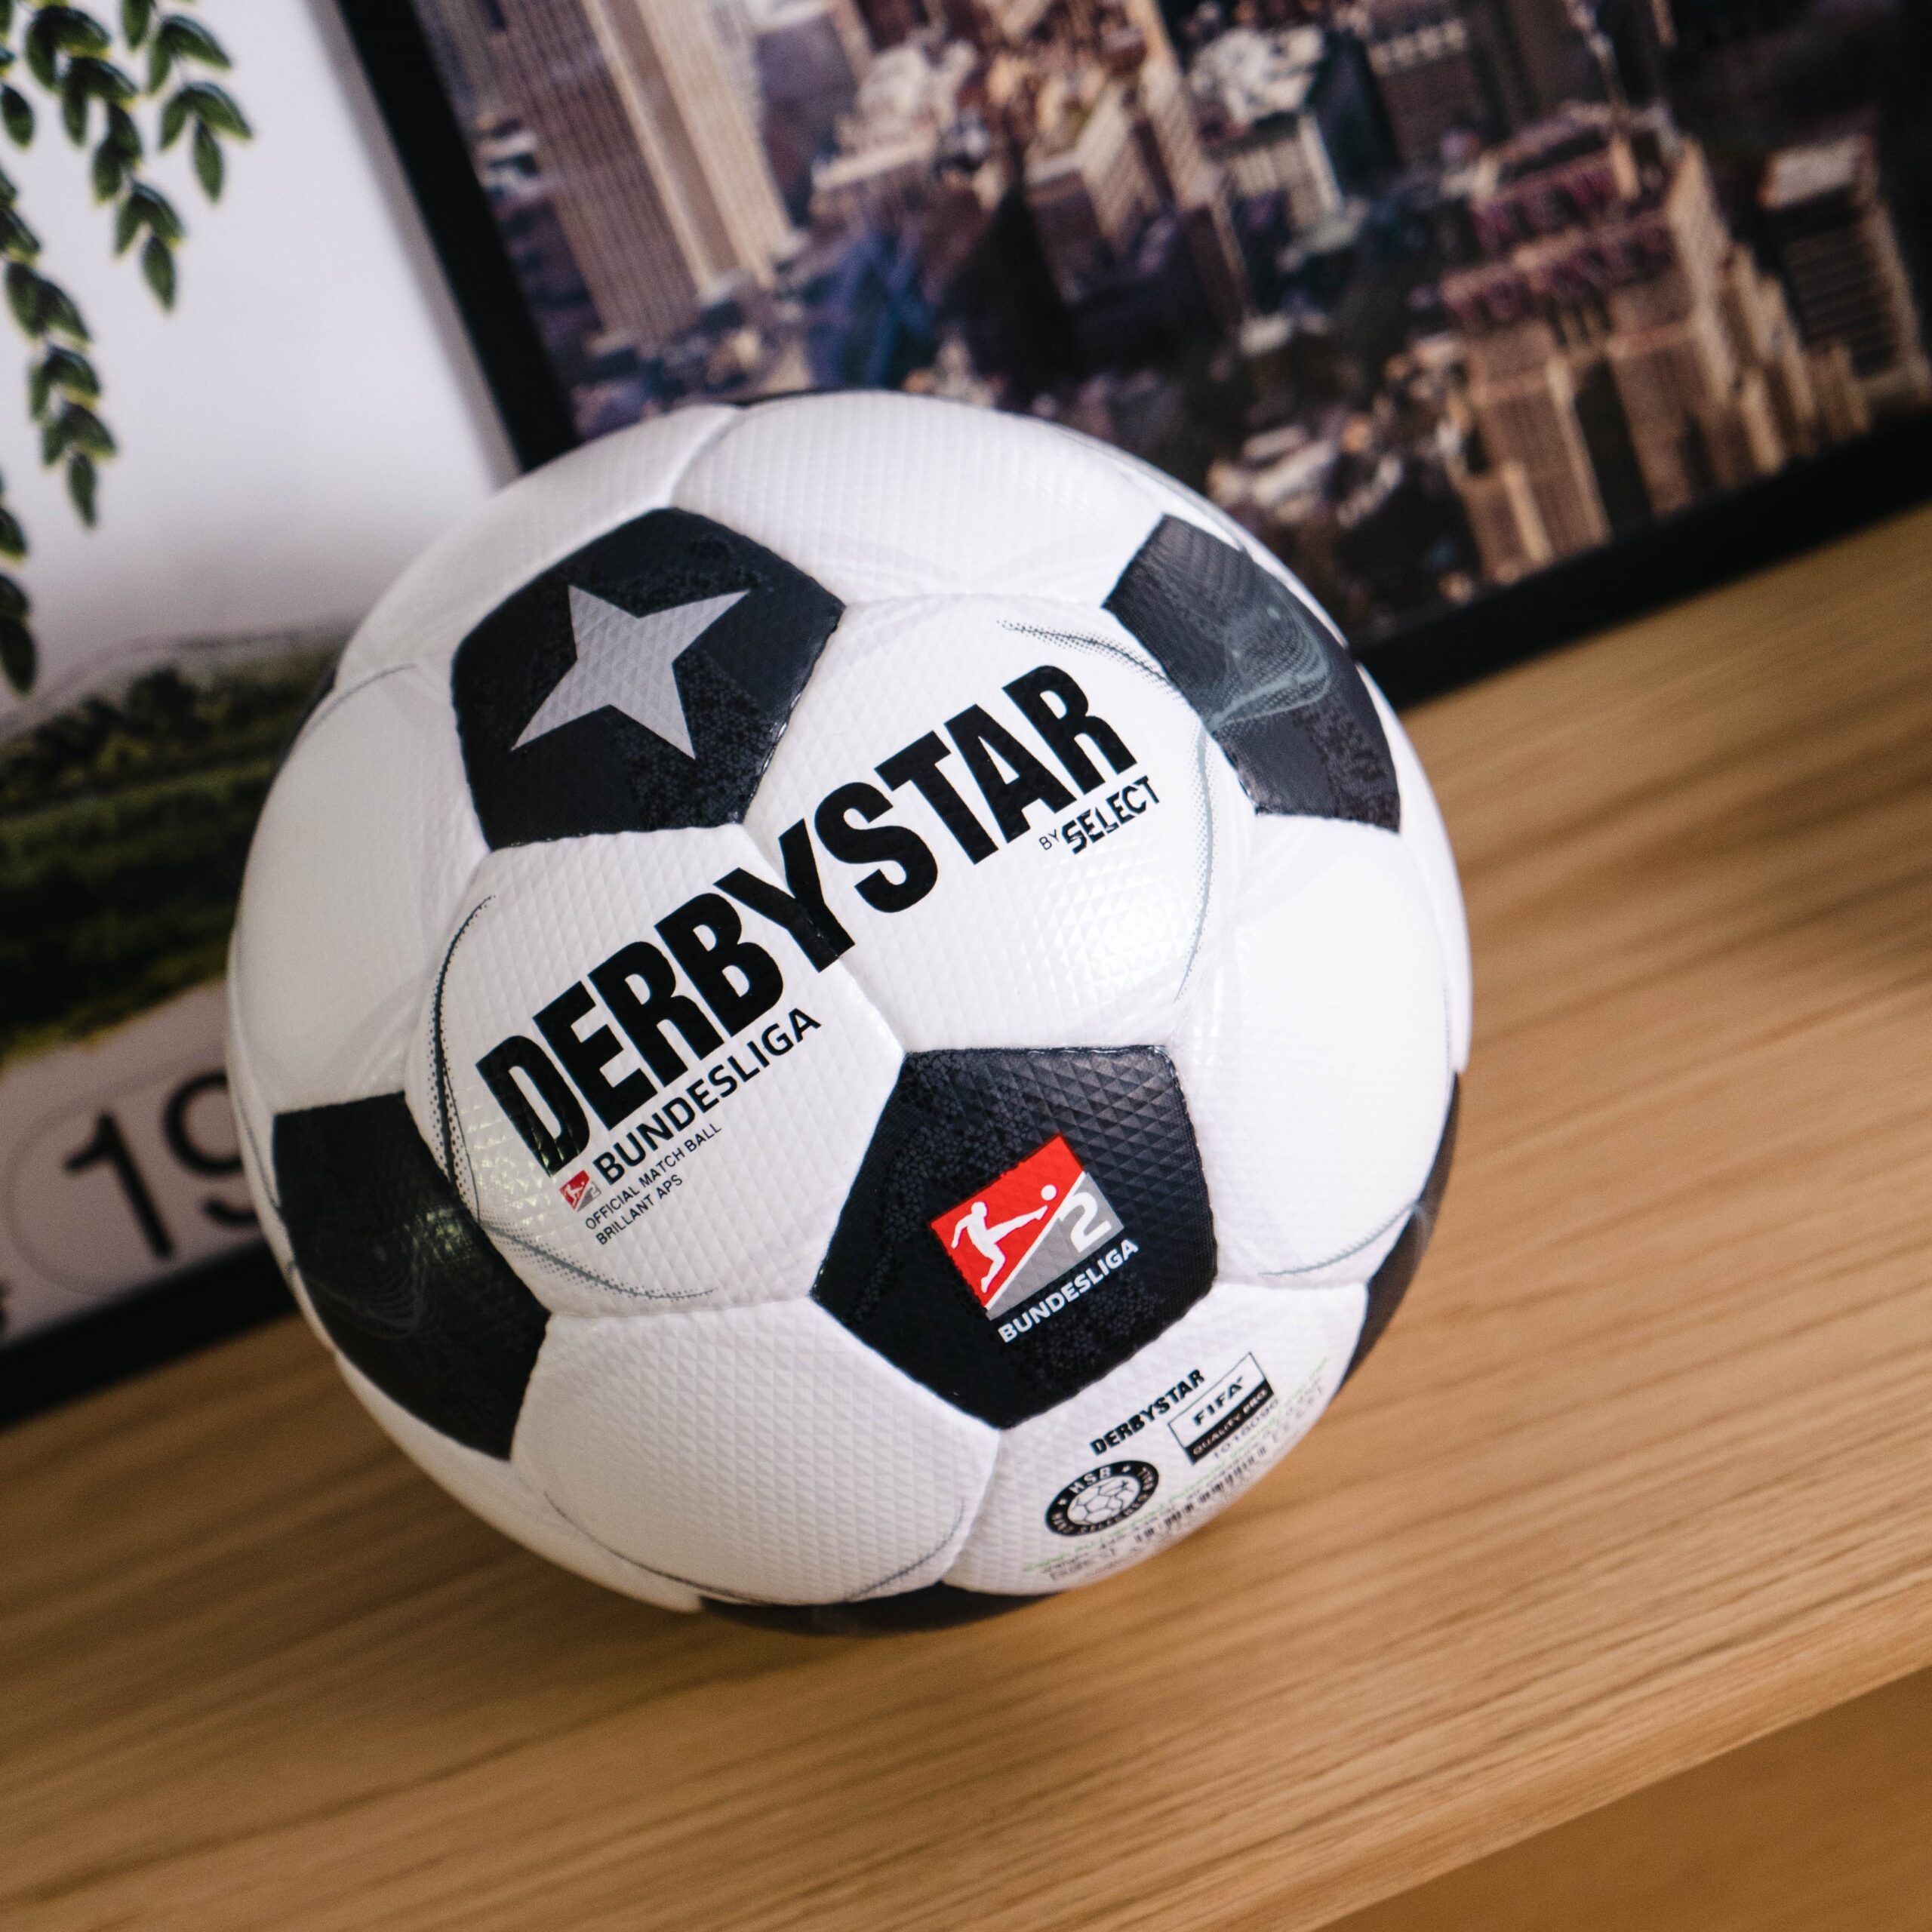 Derbystar Jubiläumsball 2. Bundesliga (1 von 1)-5